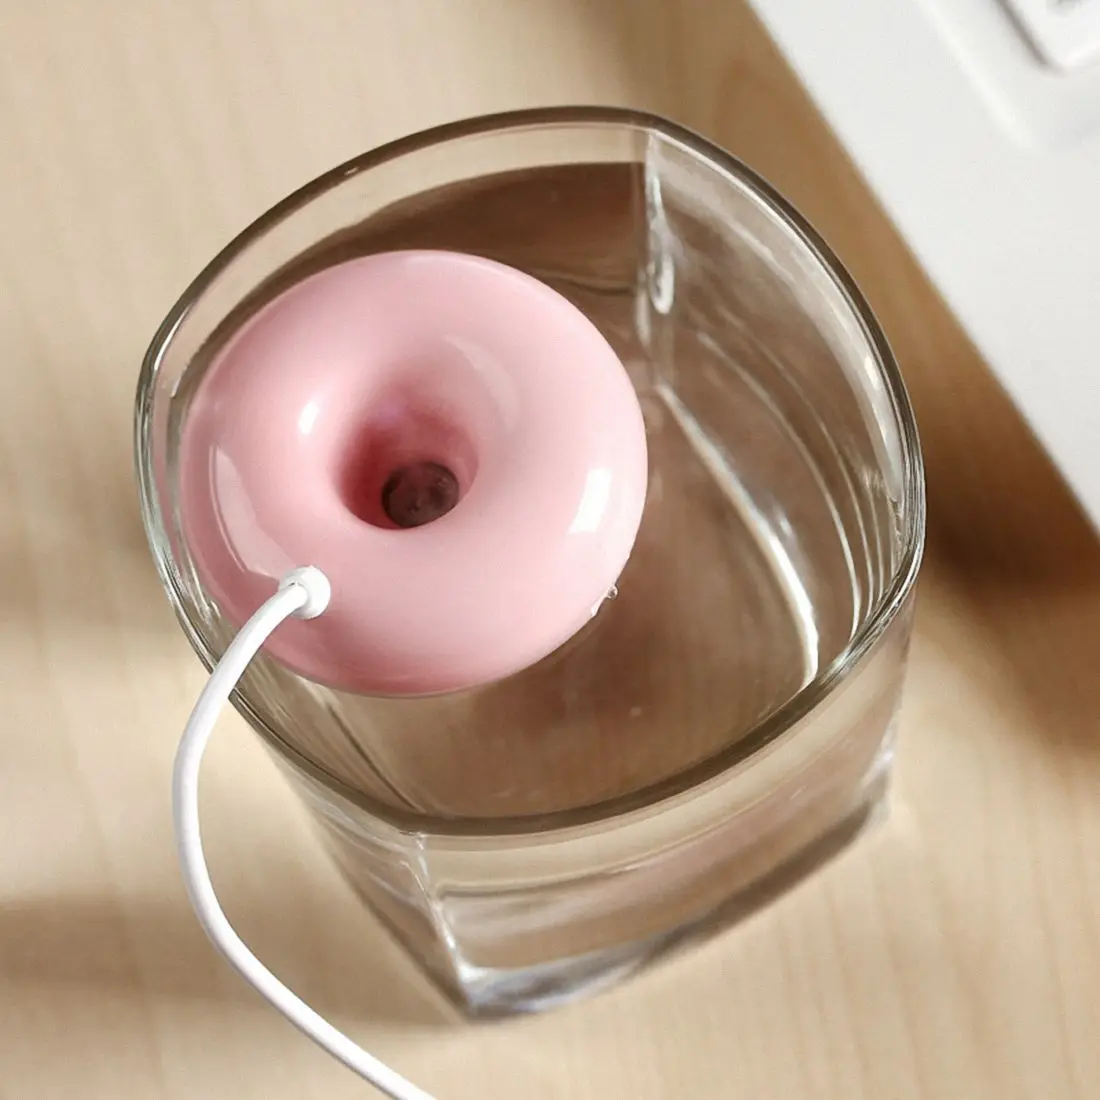 Розовый пончик увлажнитель usb офисный настольный мини-увлажнитель портативный креативный очиститель воздуха розовый